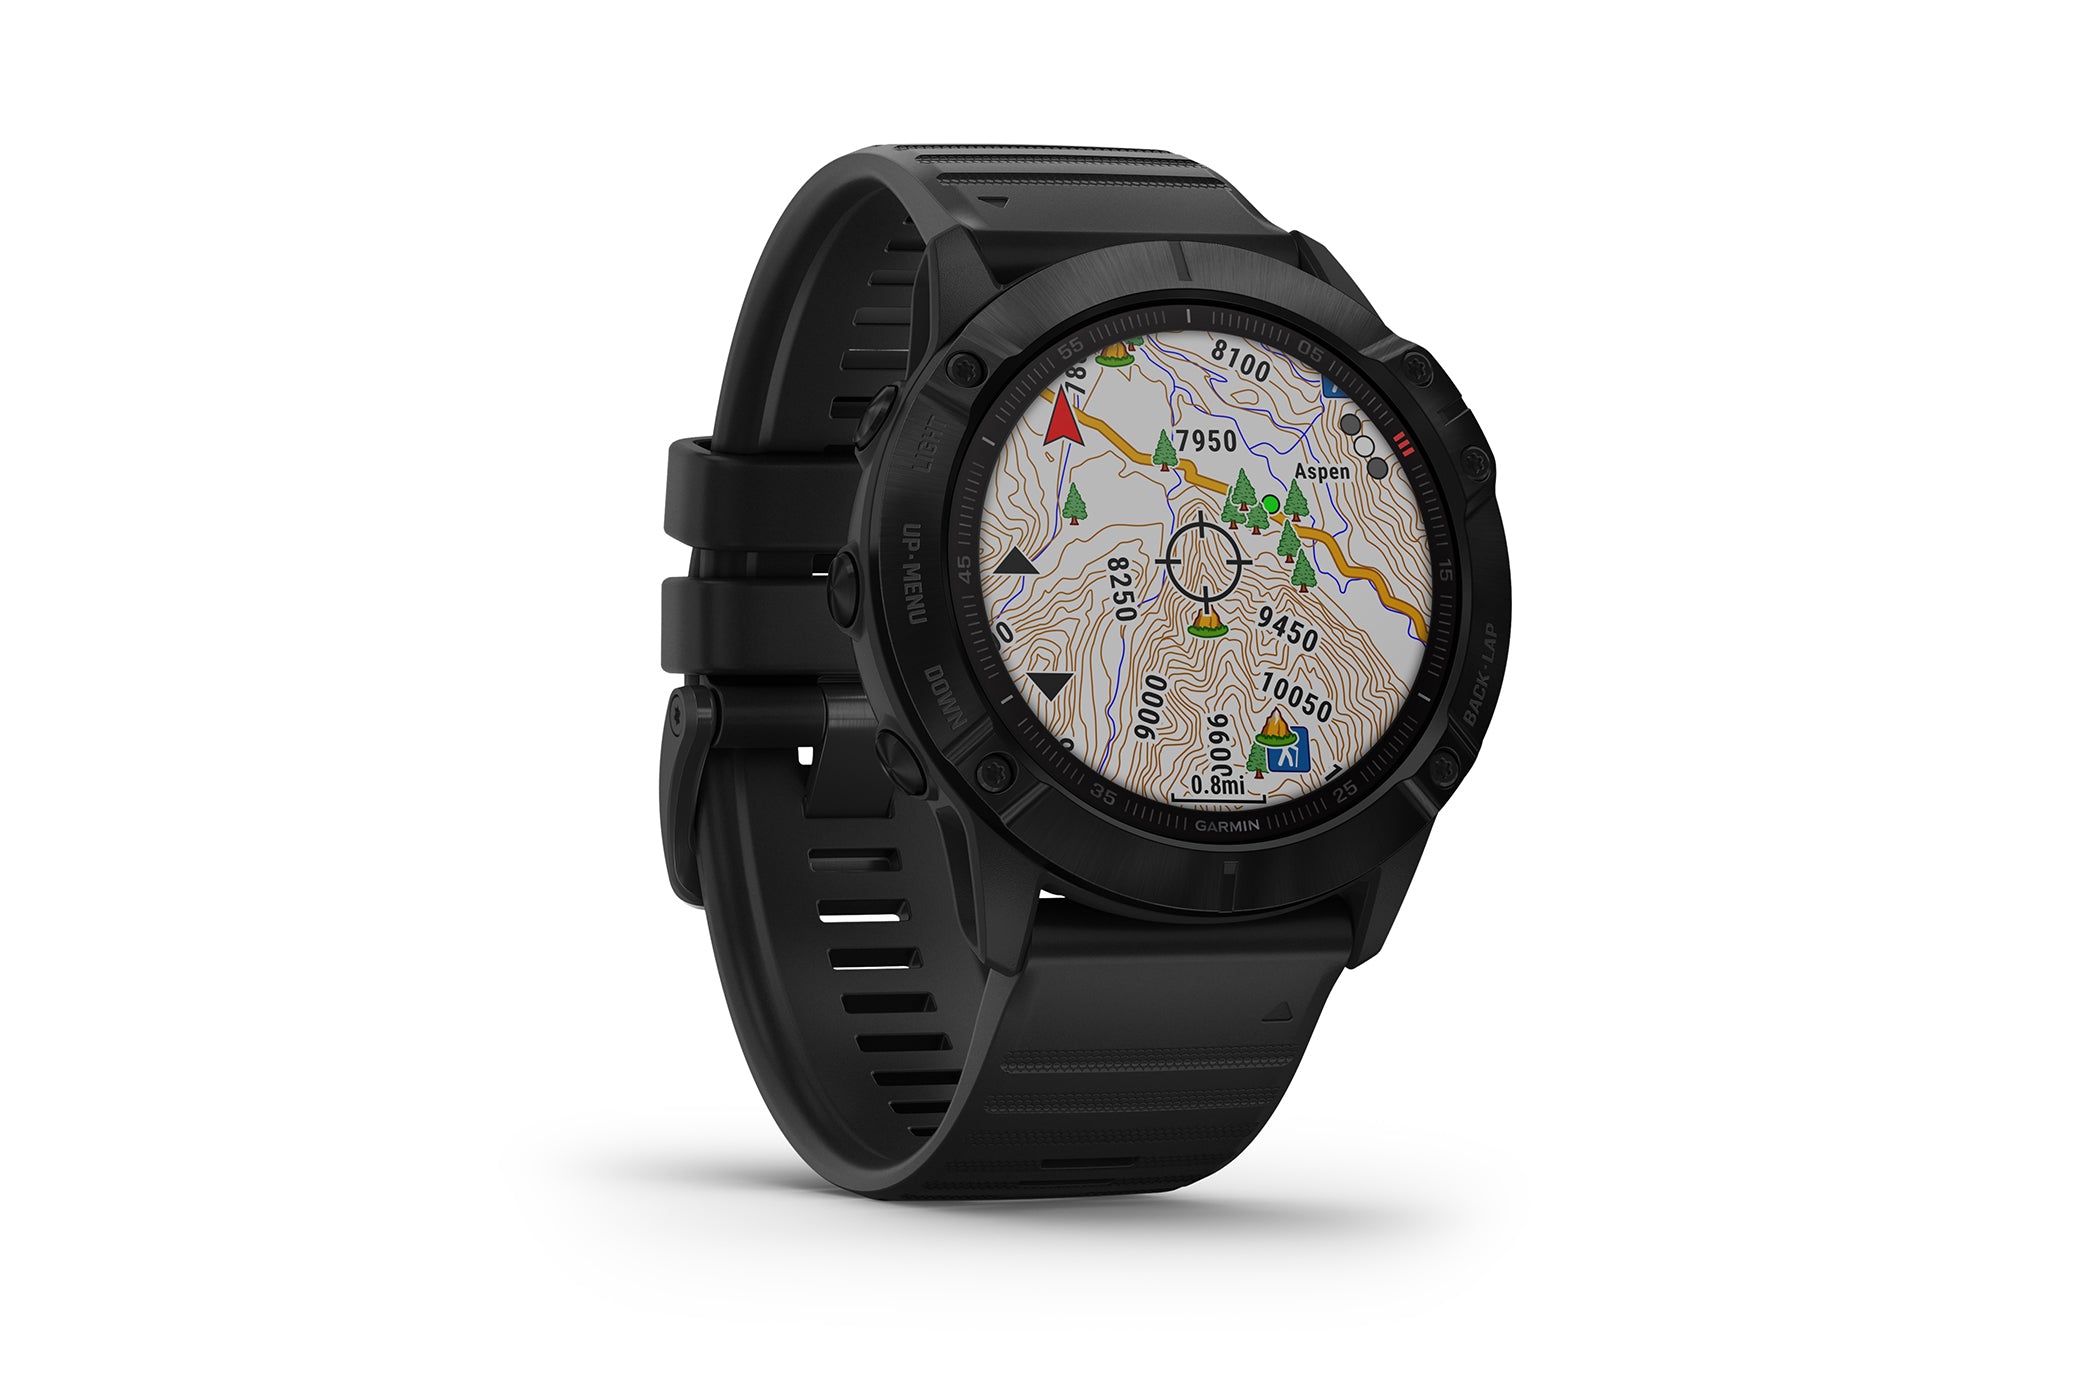 Garmin Fenix 6X Pro Smartwatch